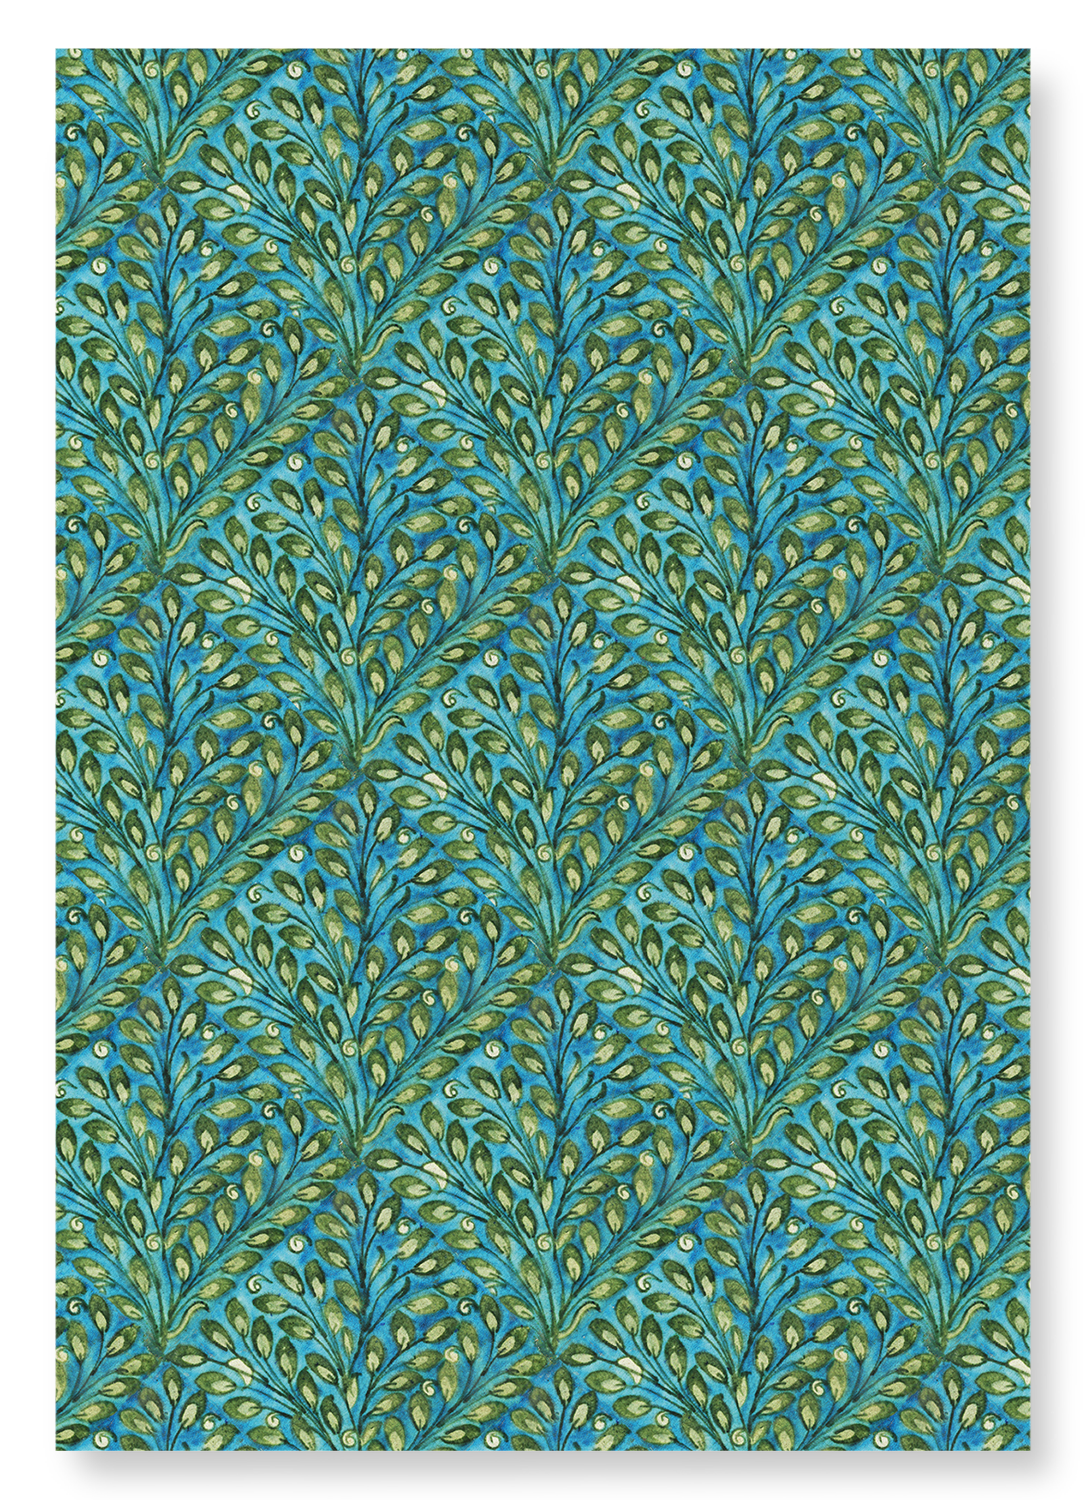 PLANT PATTERN (1885-1890): Pattern Art Print